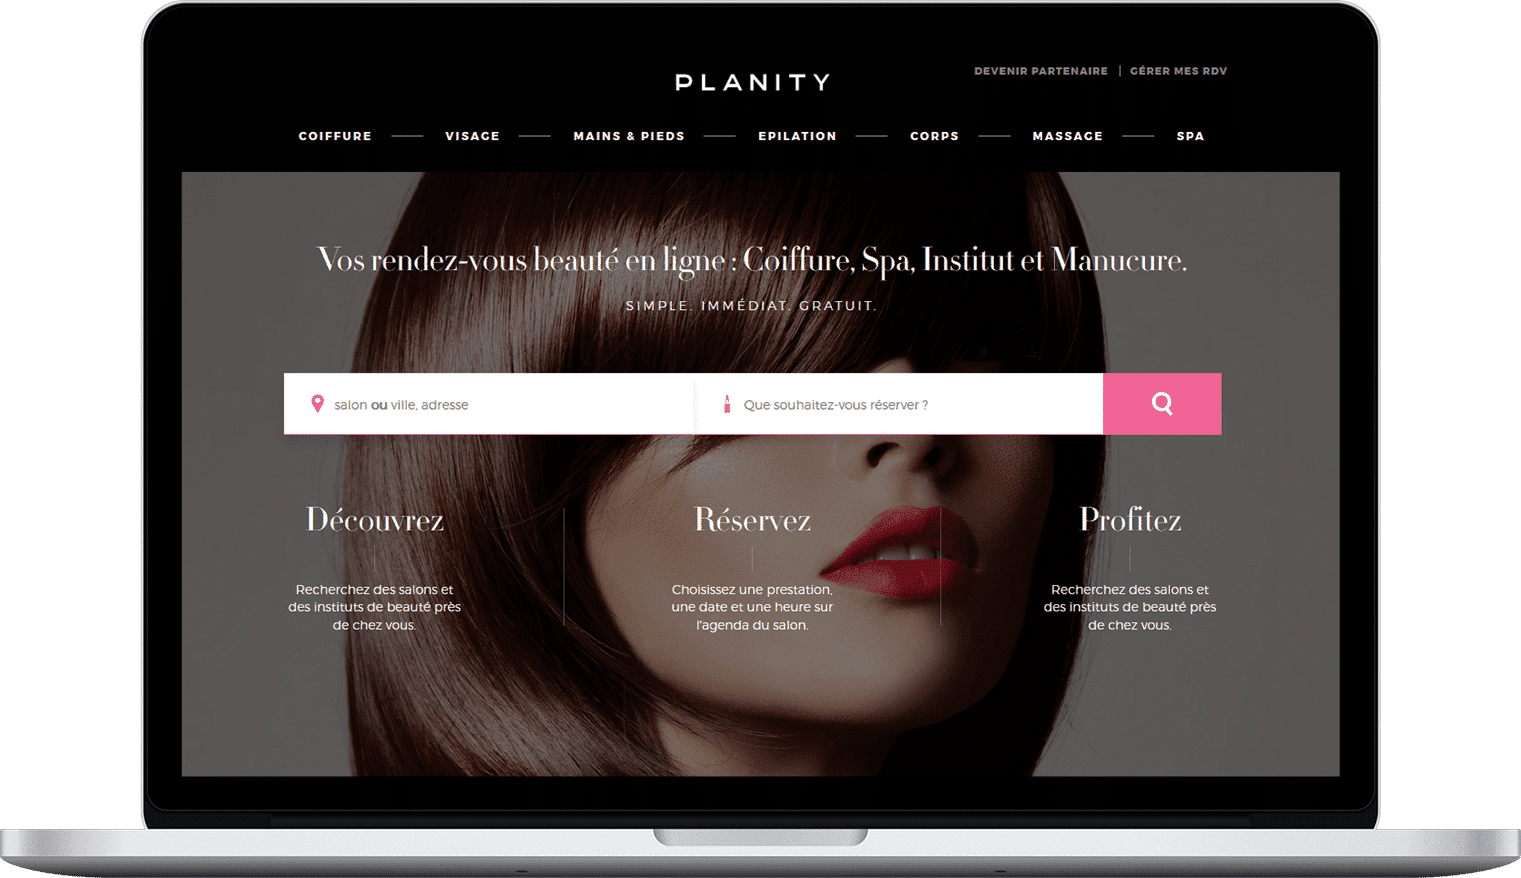 Planity Desktop Start-up – Planity : Prendre soin de soi n’a jamais été aussi simple et rapide ! barbier